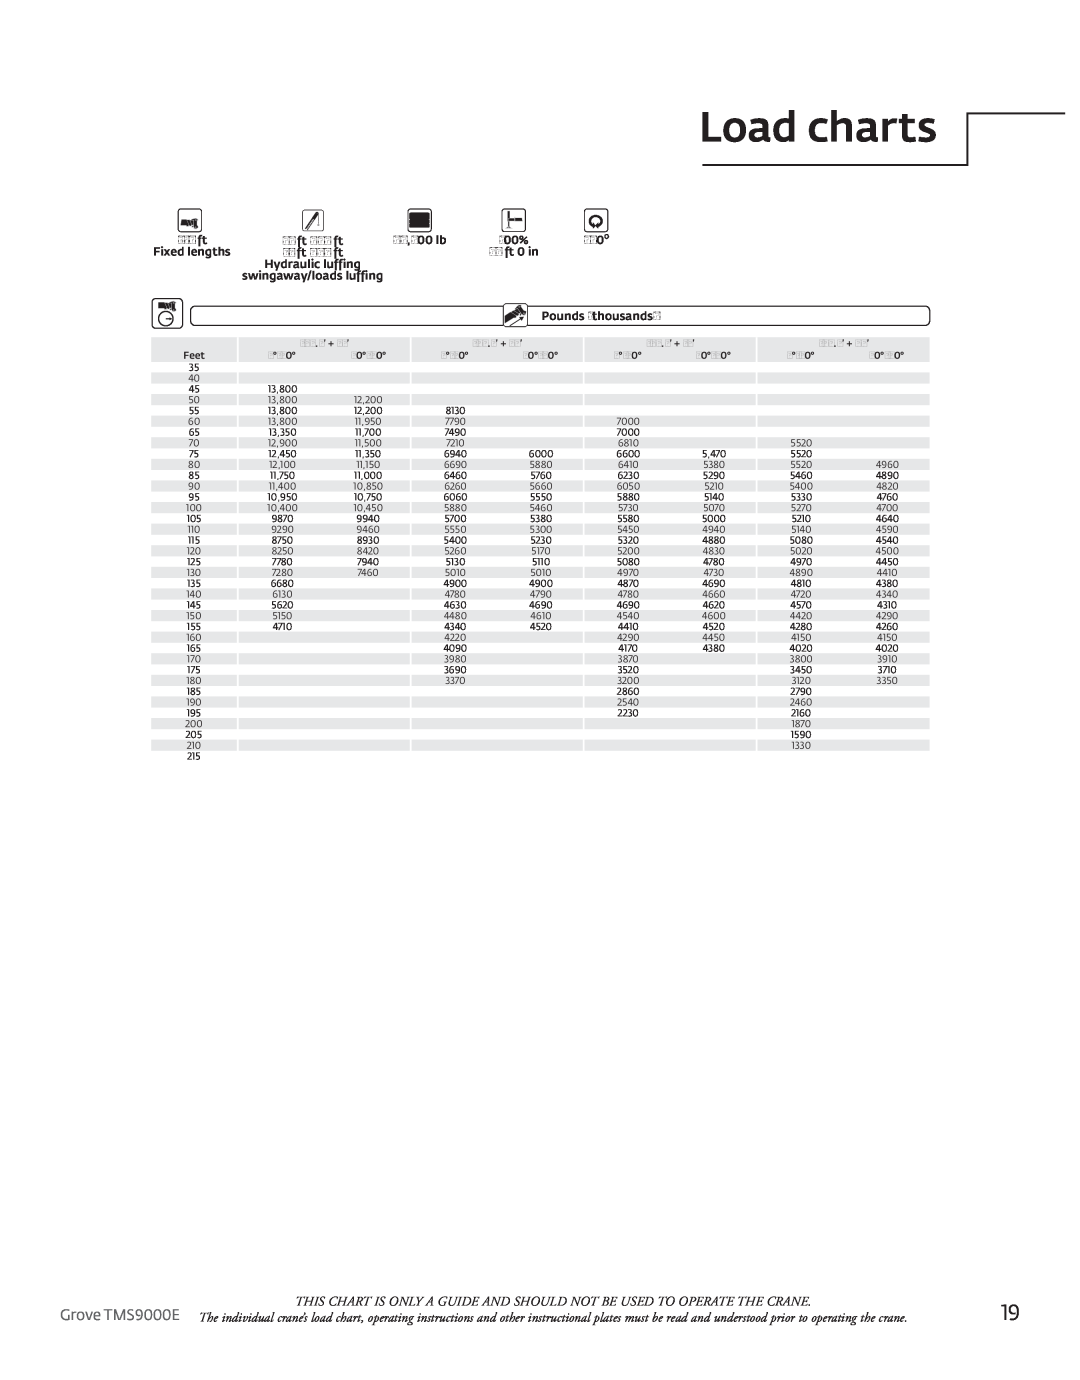 Manitowoc Ice manual Load charts, Grove TMS9000E 